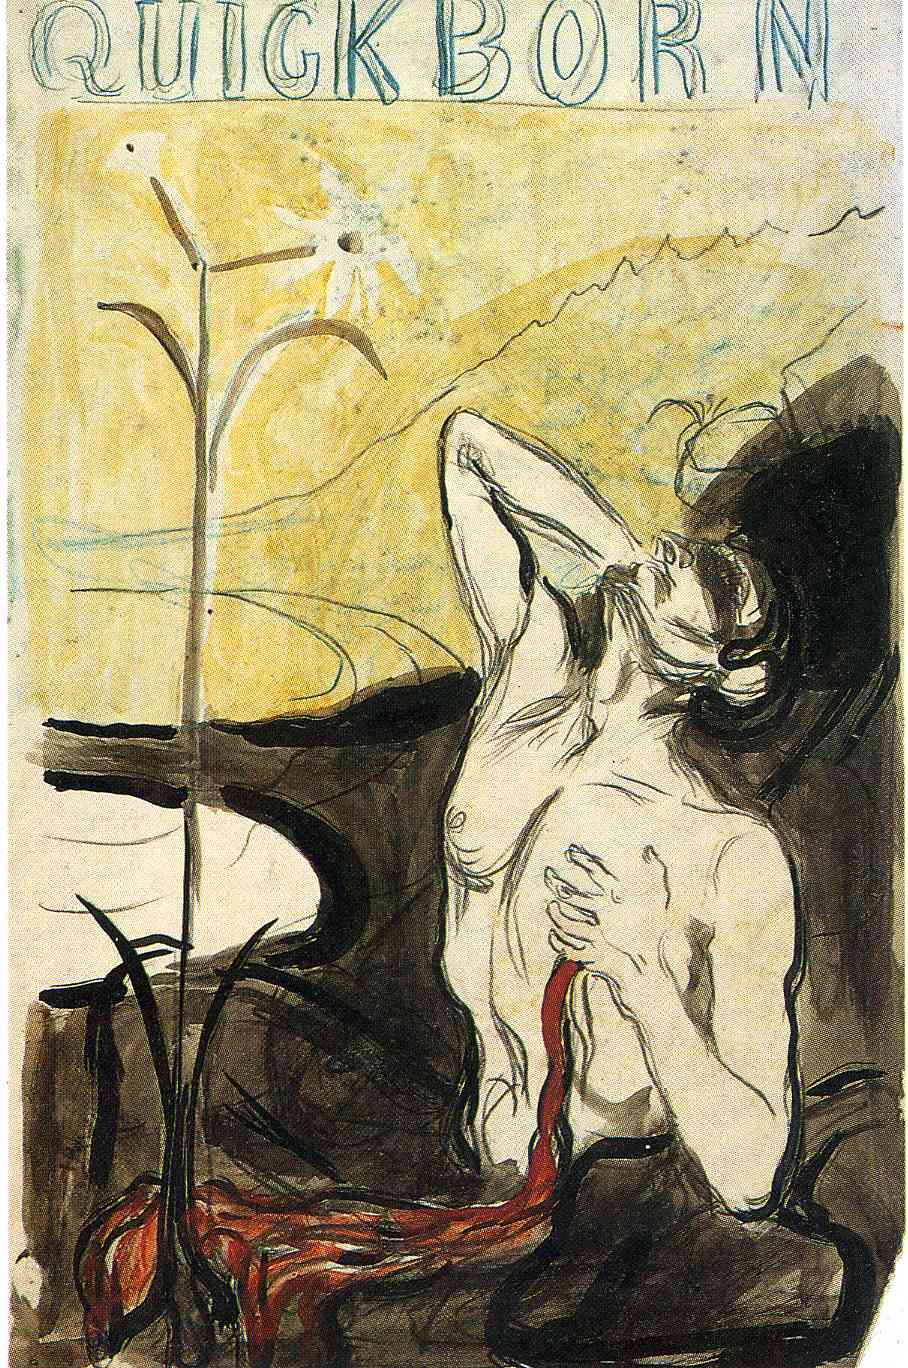 Цветок боли by Edvard Munch - 1897 -  50 x 43 см 